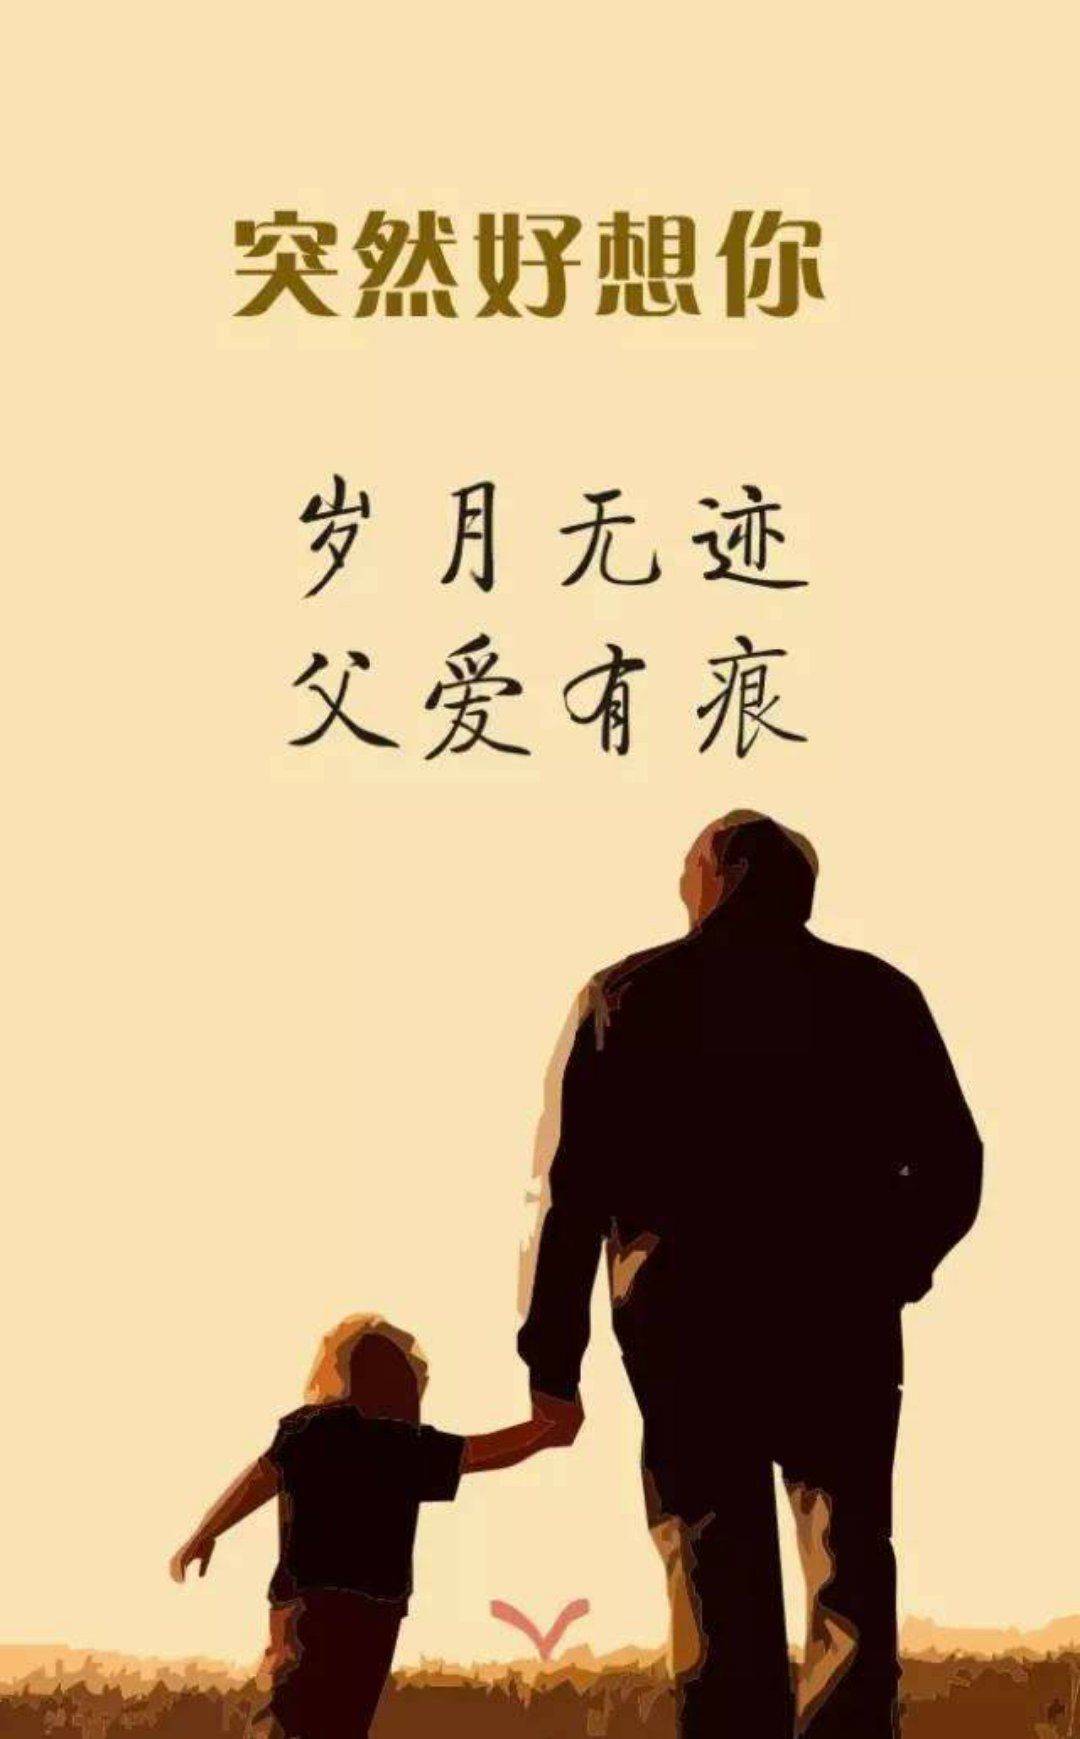 【星连文学社】吉林诗人梁伟民:写给远在天堂的父亲